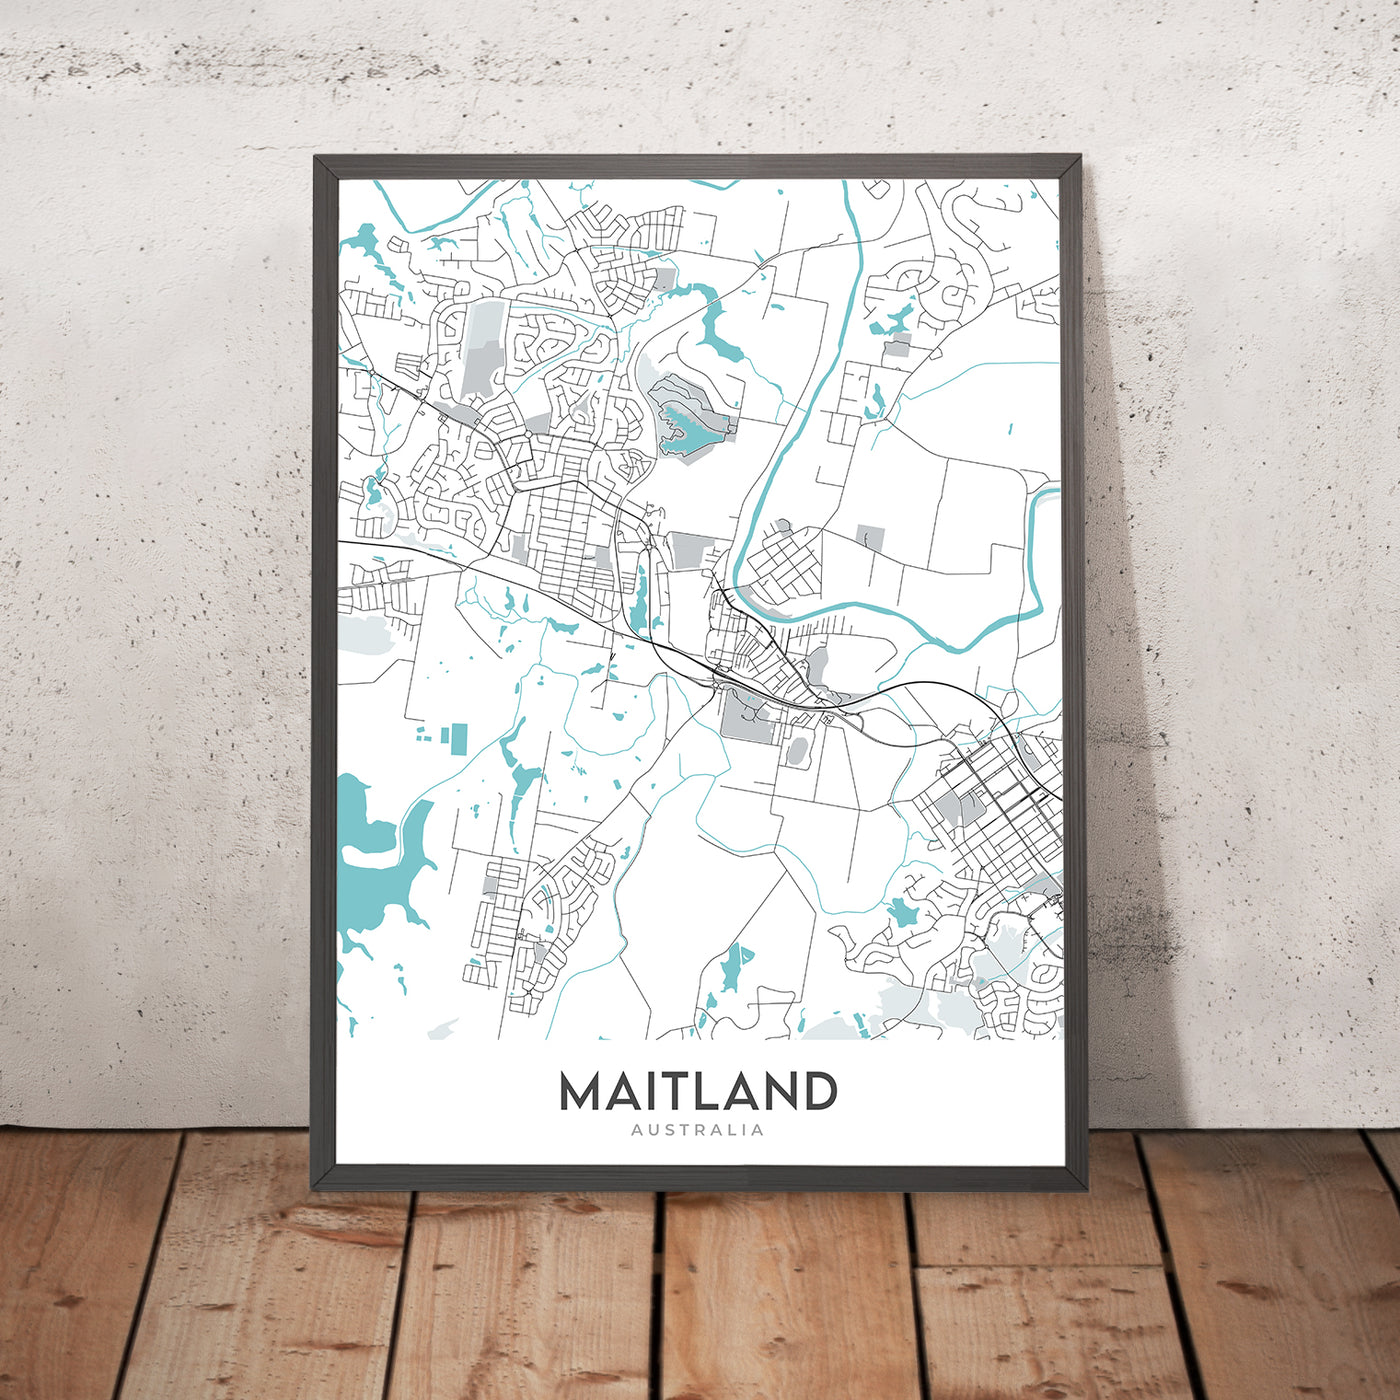 Plan de la ville moderne de Maitland, Nouvelle-Galles du Sud : prison de Maitland, musée de Maitland, hôtel de ville de Maitland, New England Hwy, Pacific Hwy